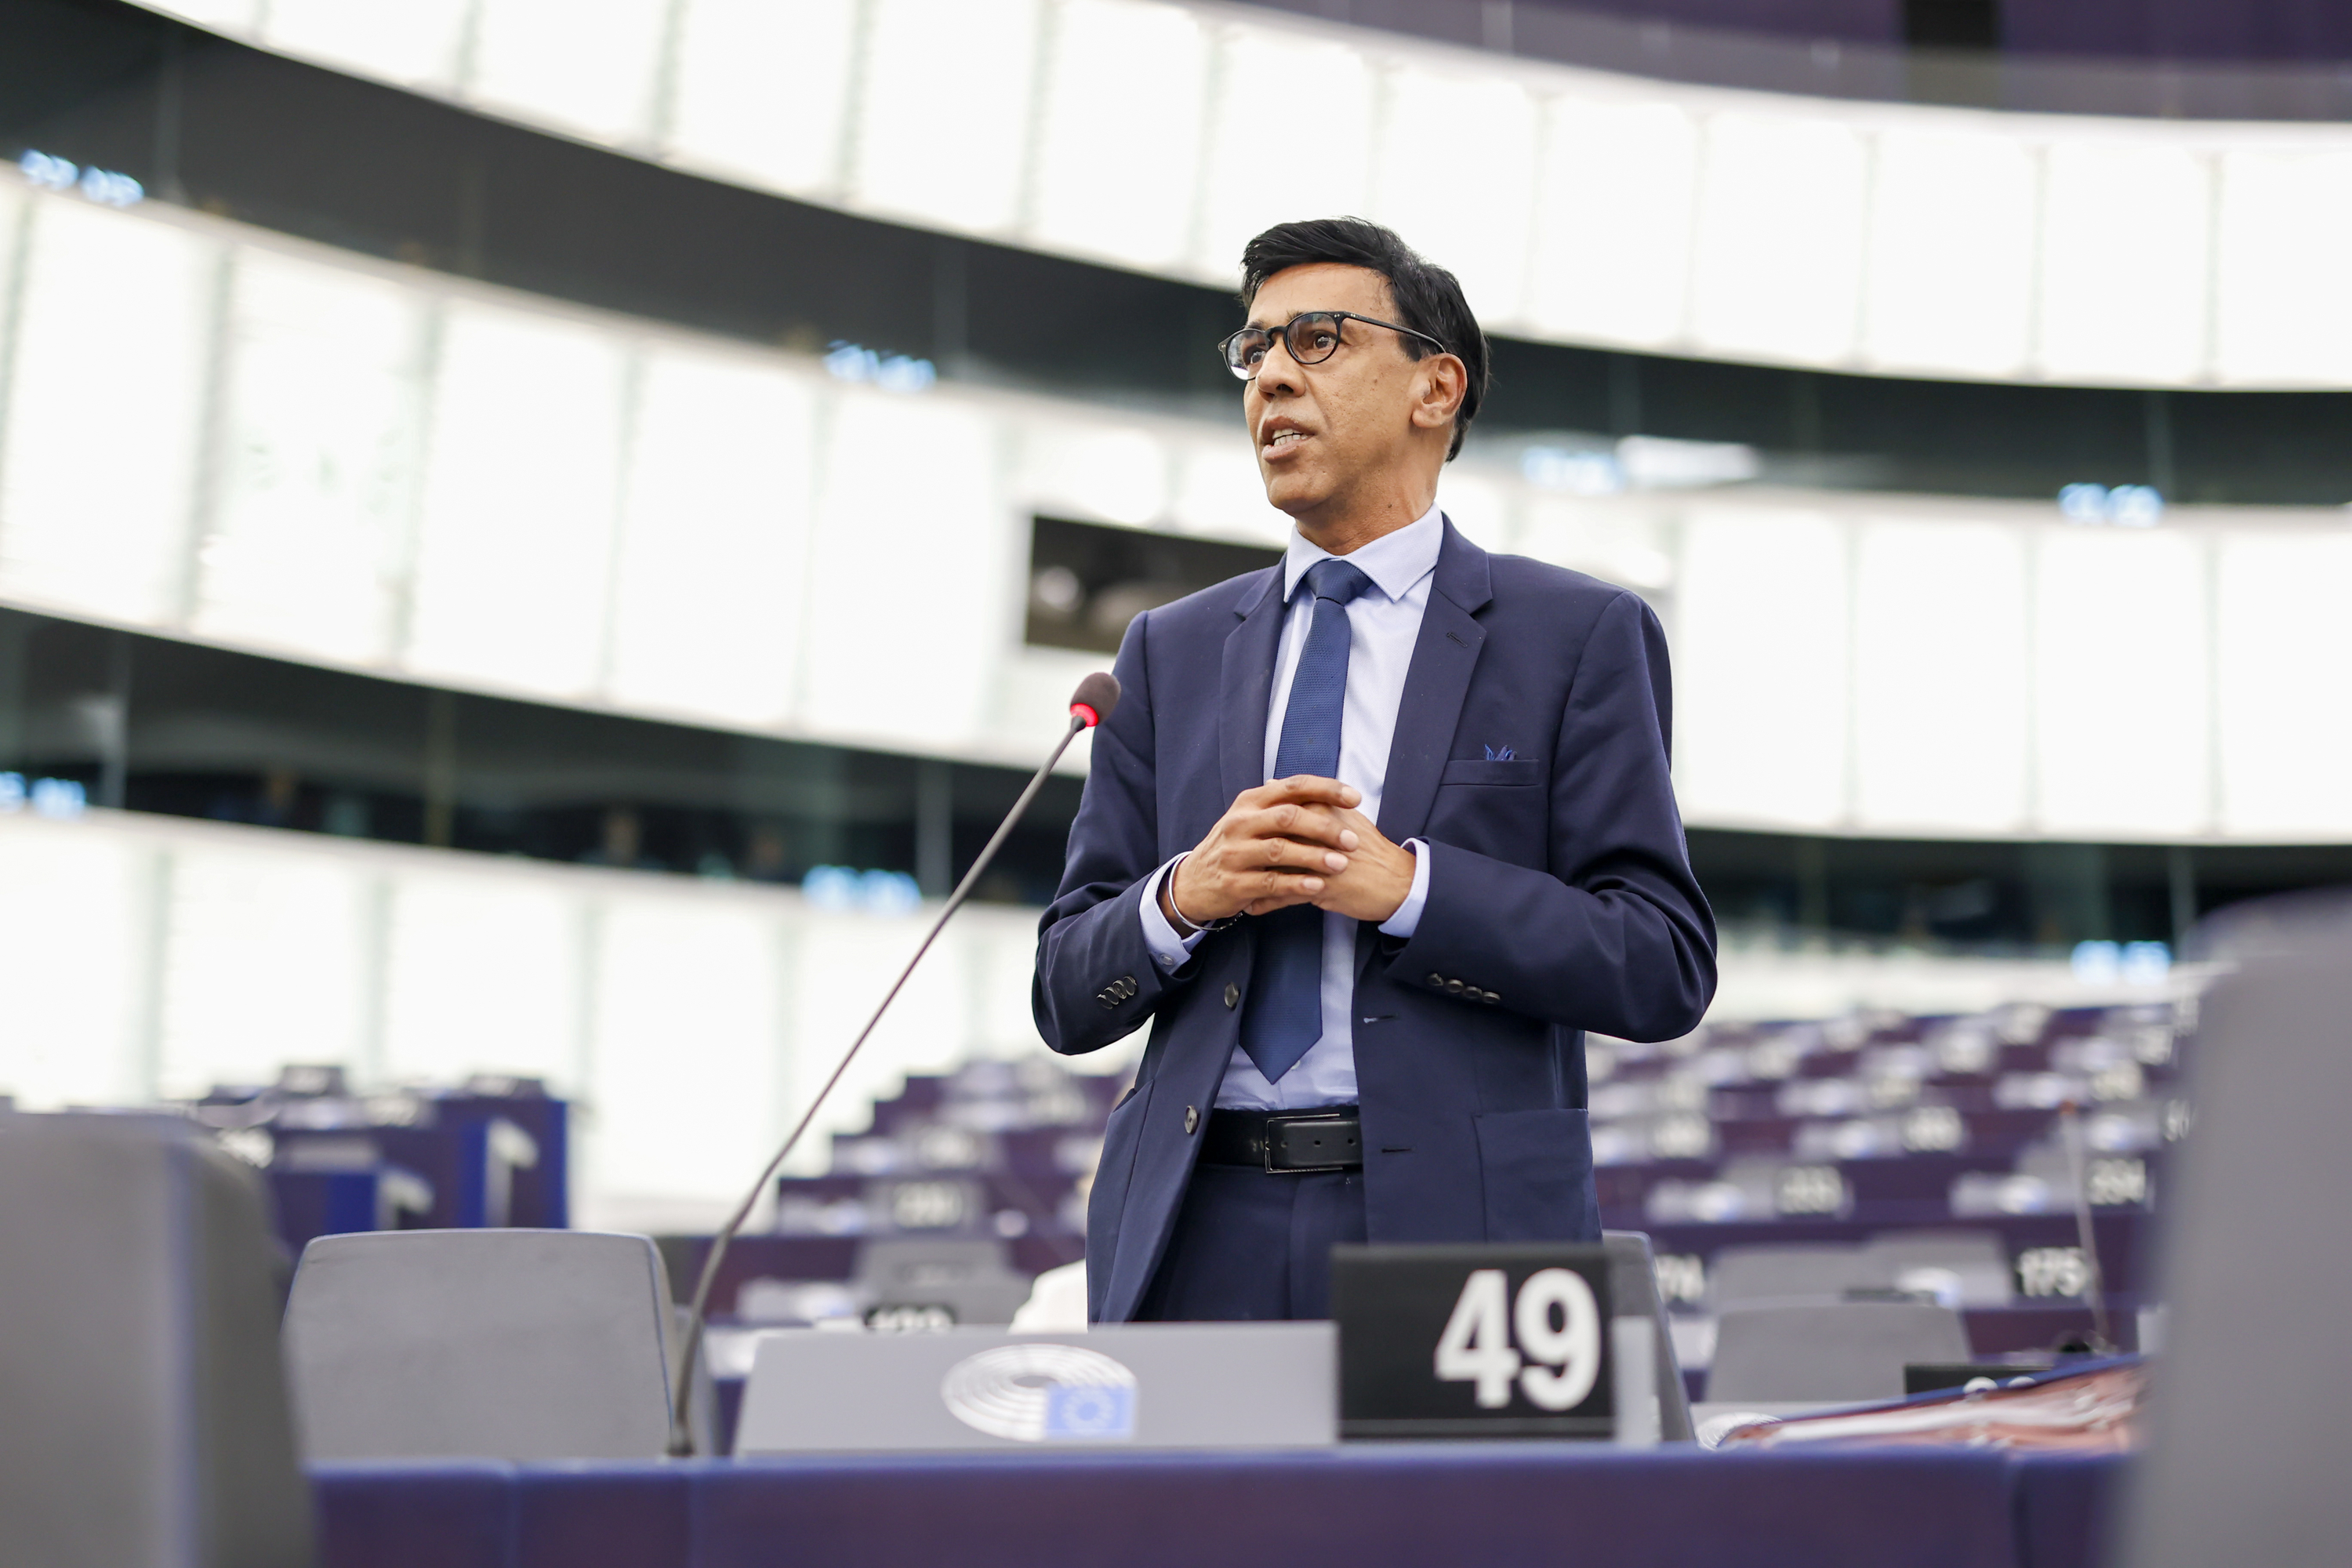 Interdiction des DCP flottants : La Commission européenne ne doit pas céder aux lobbys